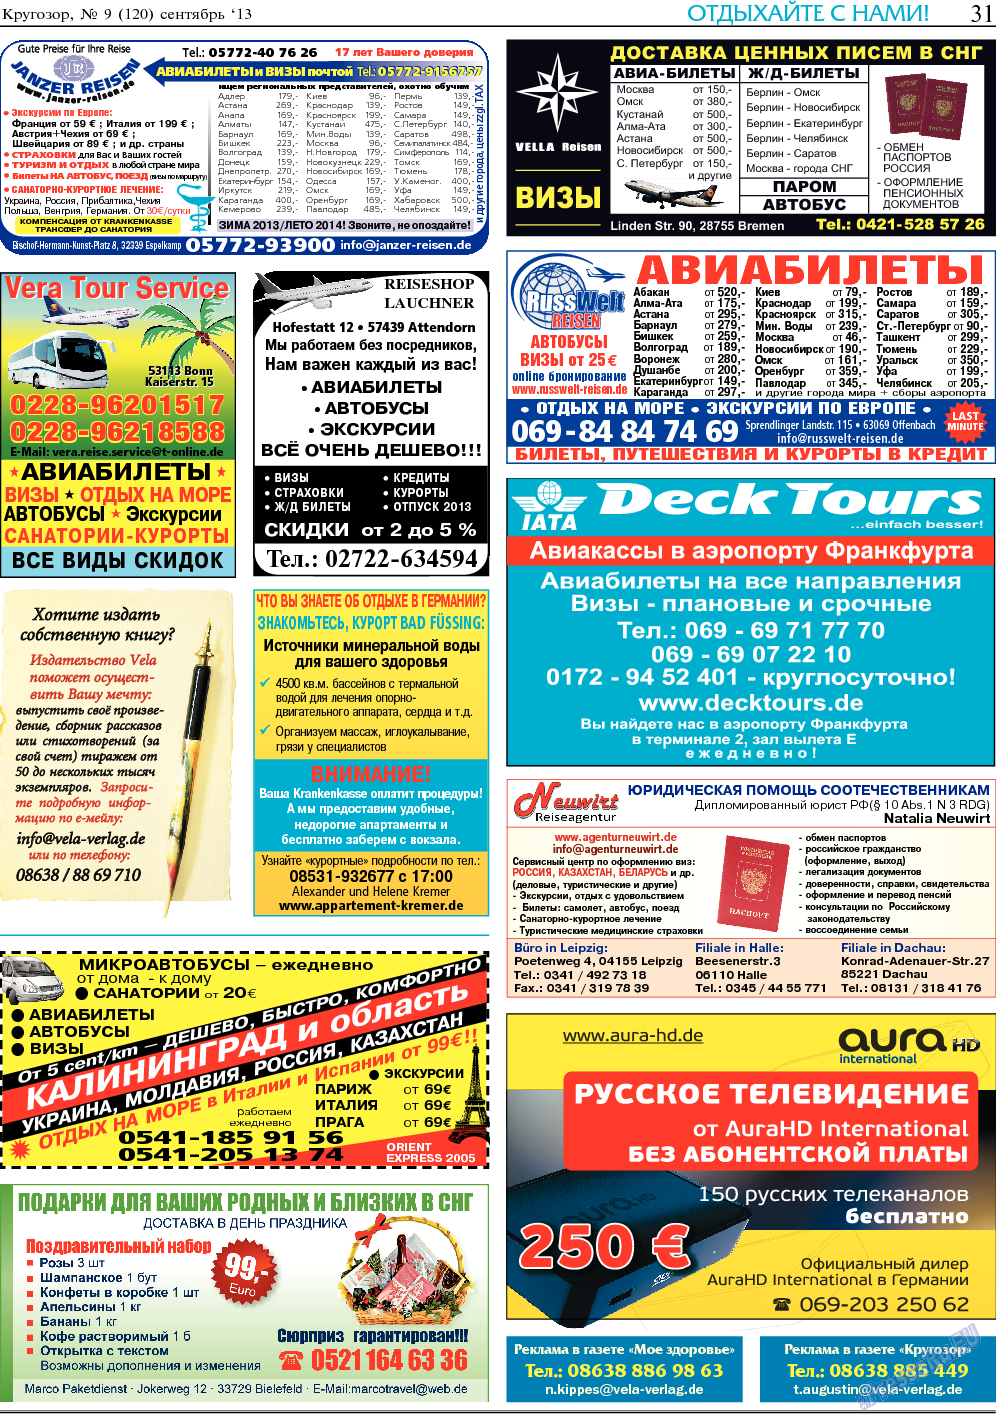 Кругозор, газета. 2013 №9 стр.31